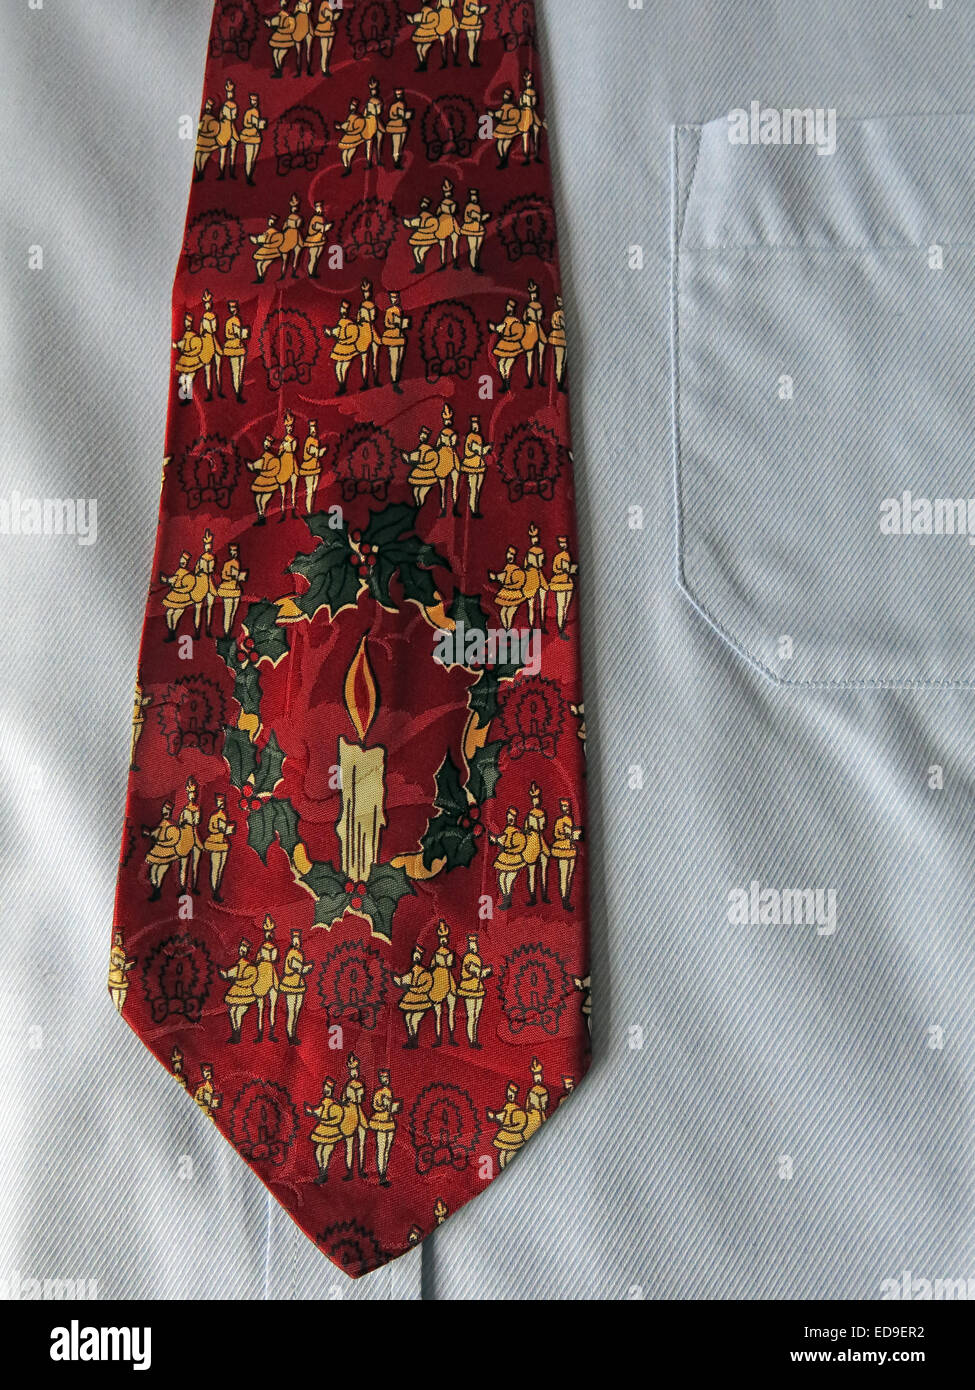 Cravate Cravate vintage intéressant Yule, homme neckware en soie Banque D'Images